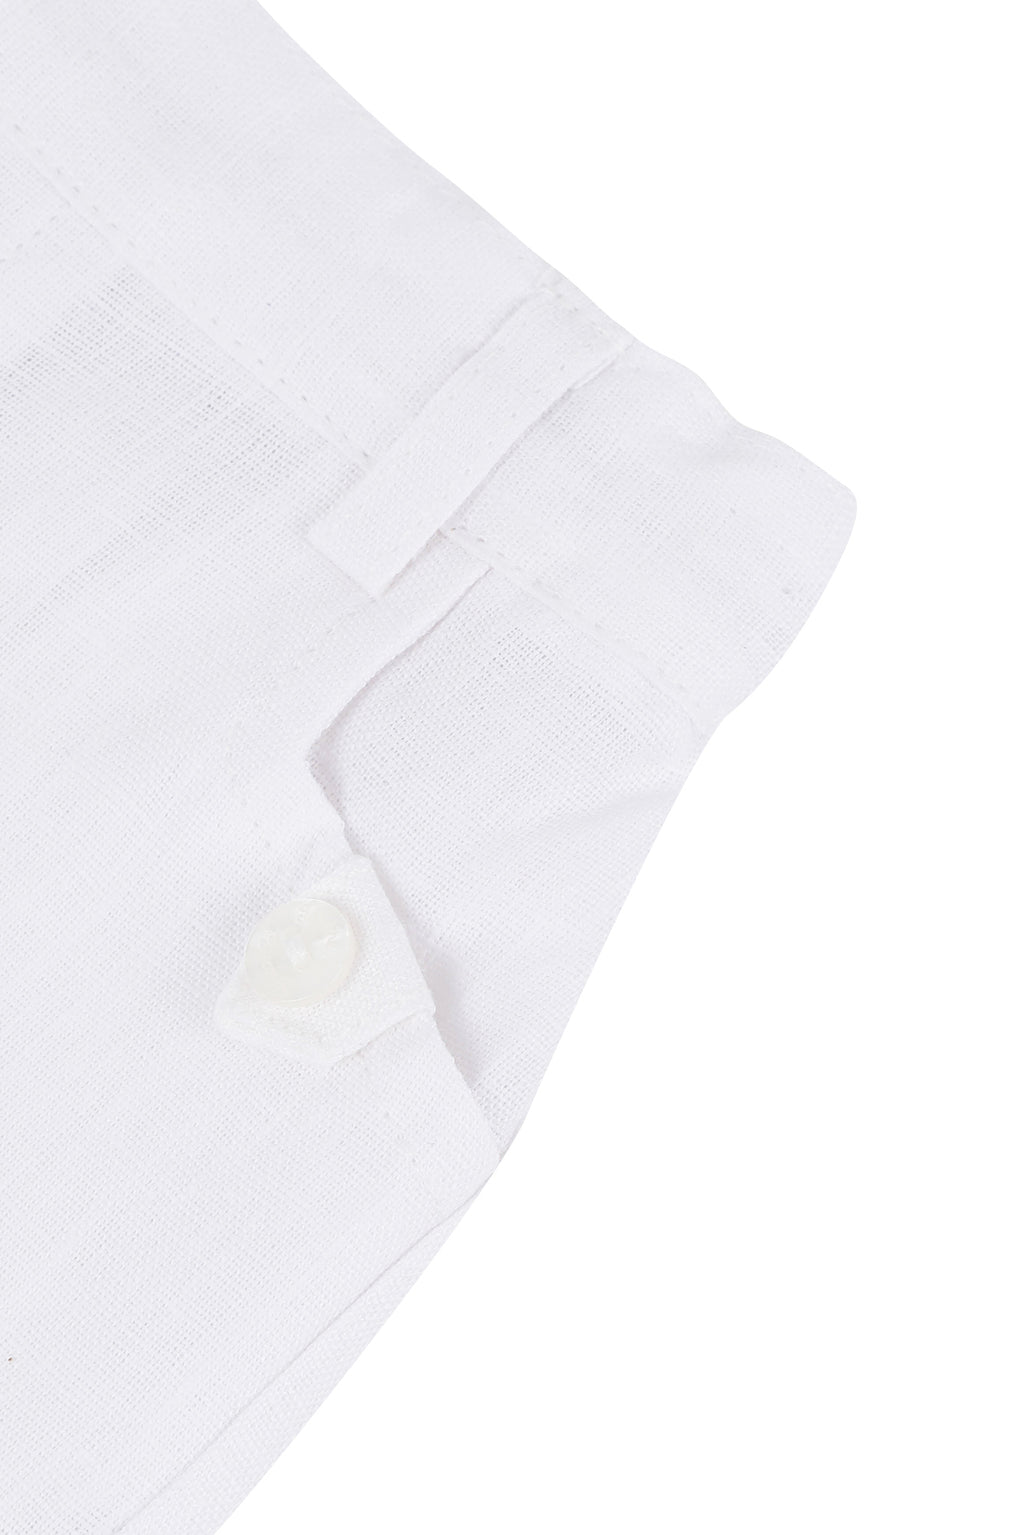 Pantaloncino - Bianco biancheria